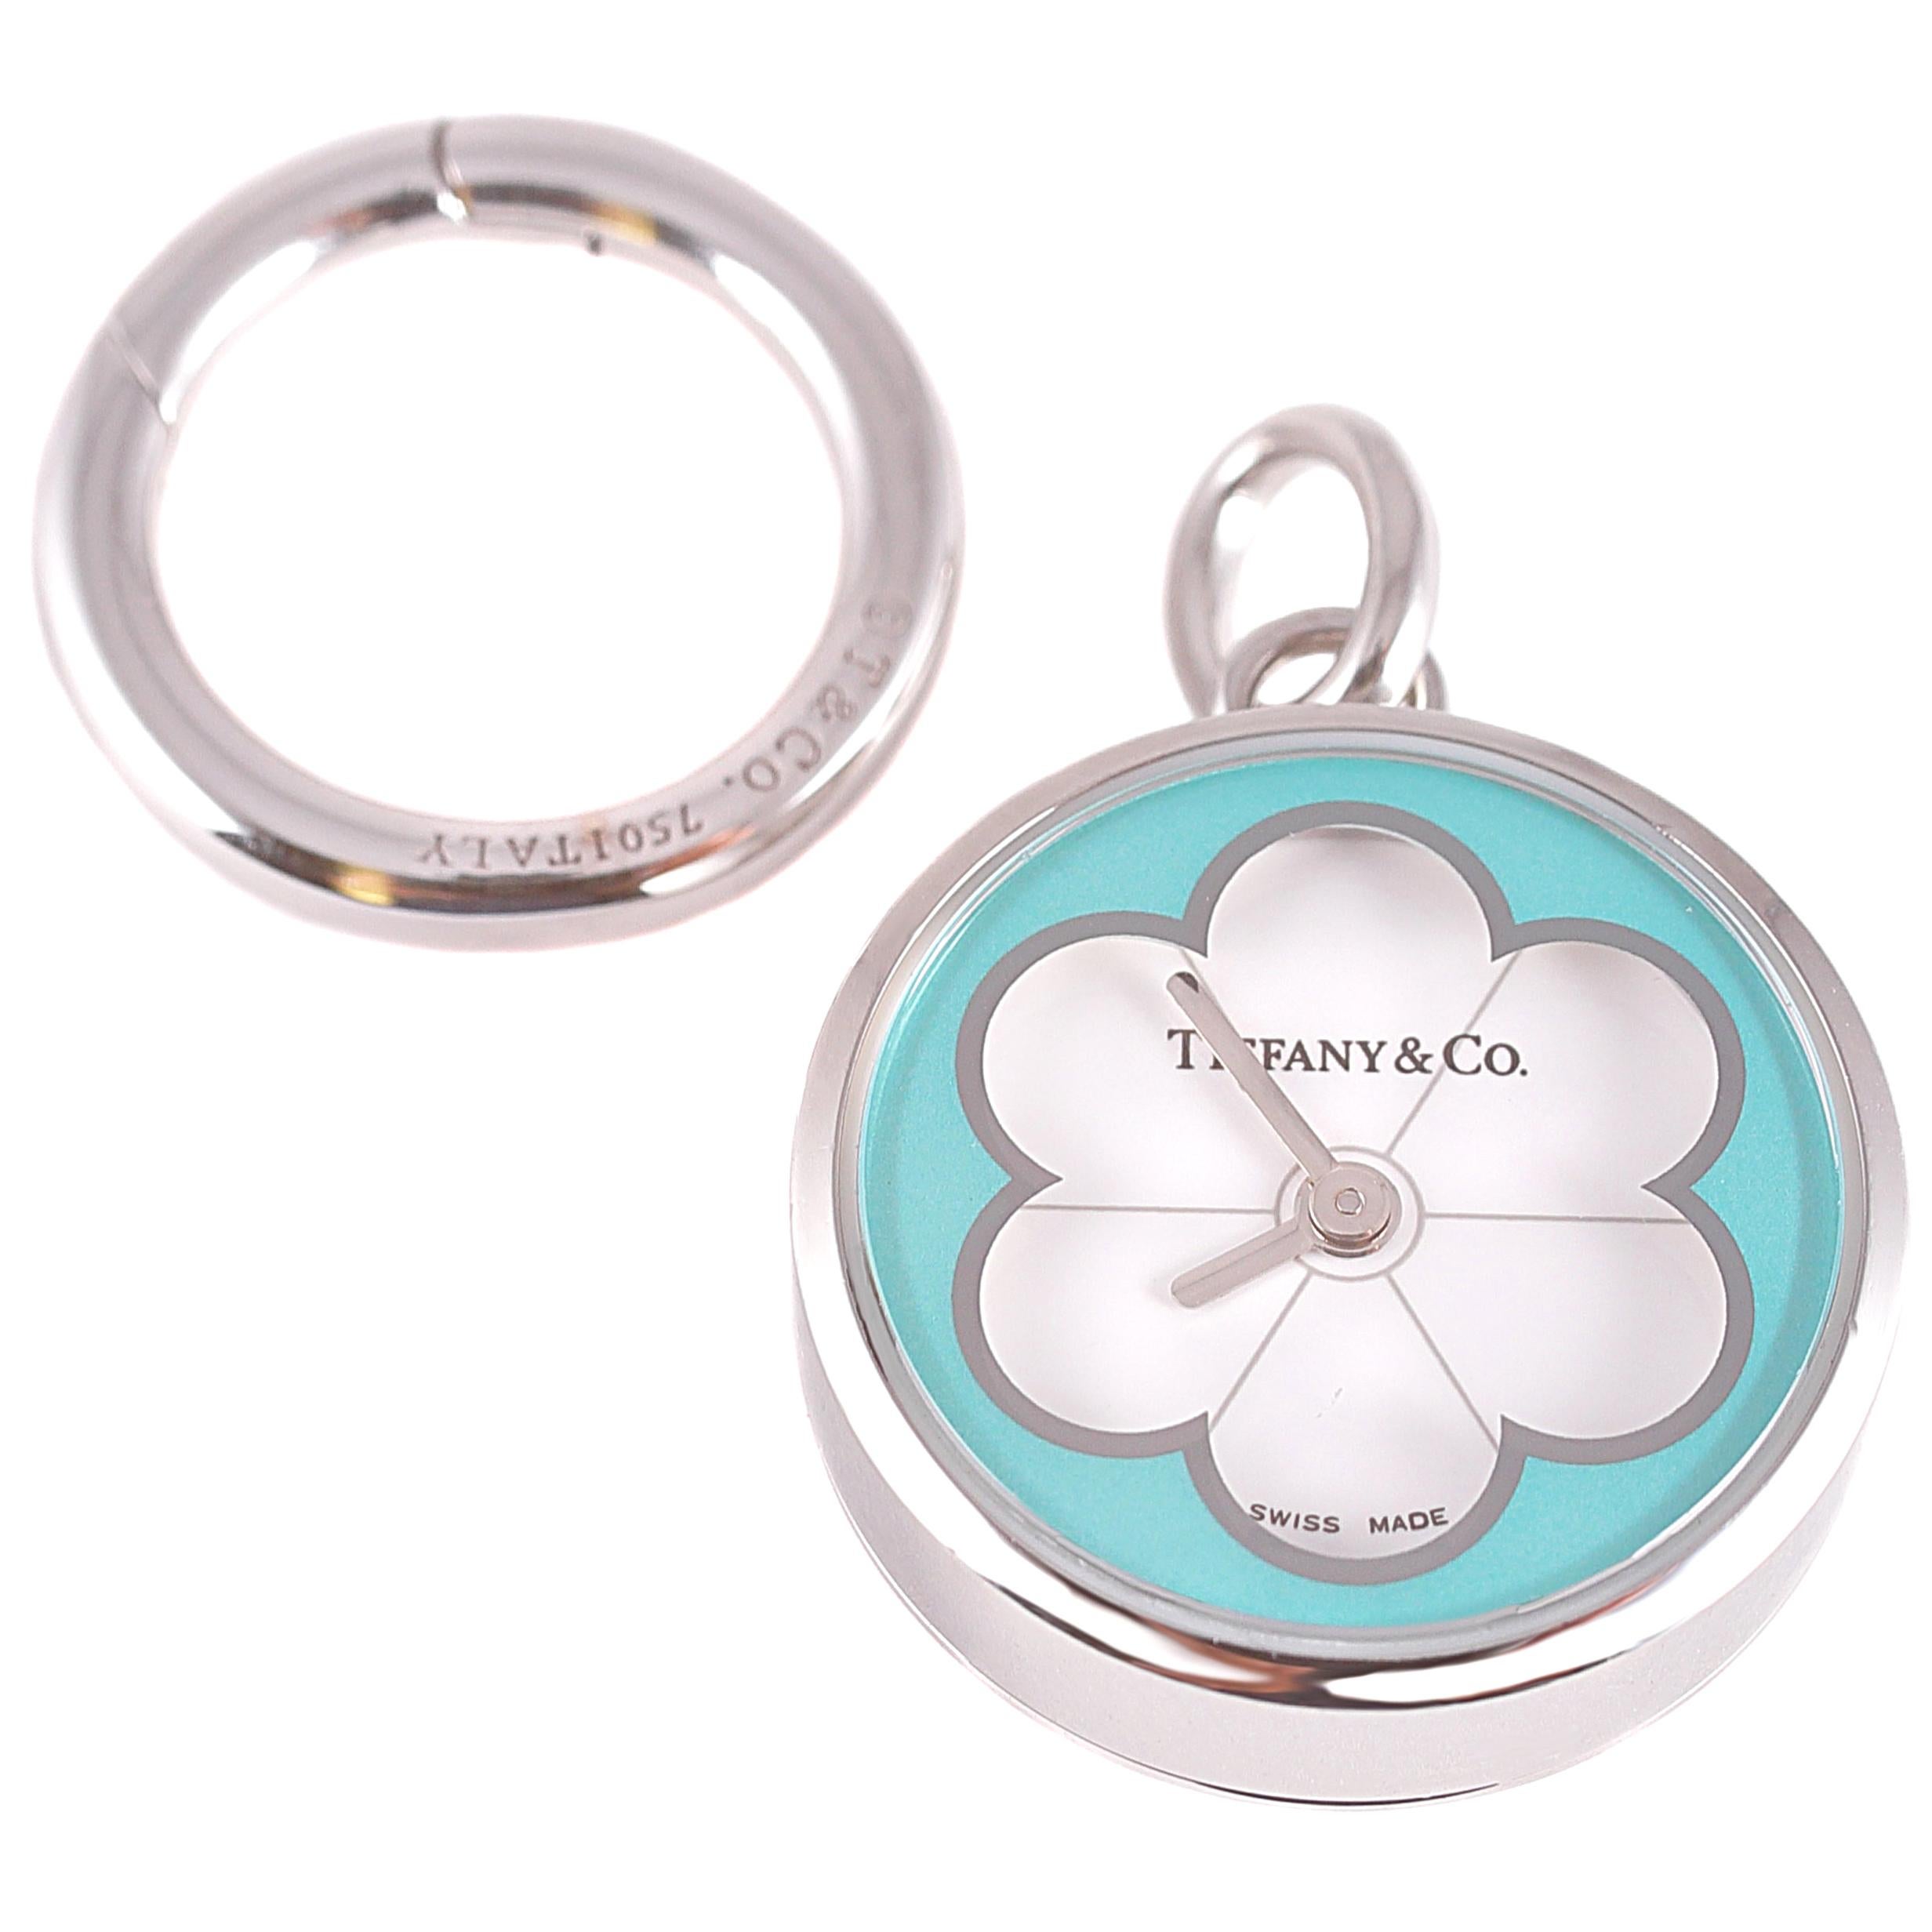 Tiffany & Co. "Blossom" Flower Watch Charm